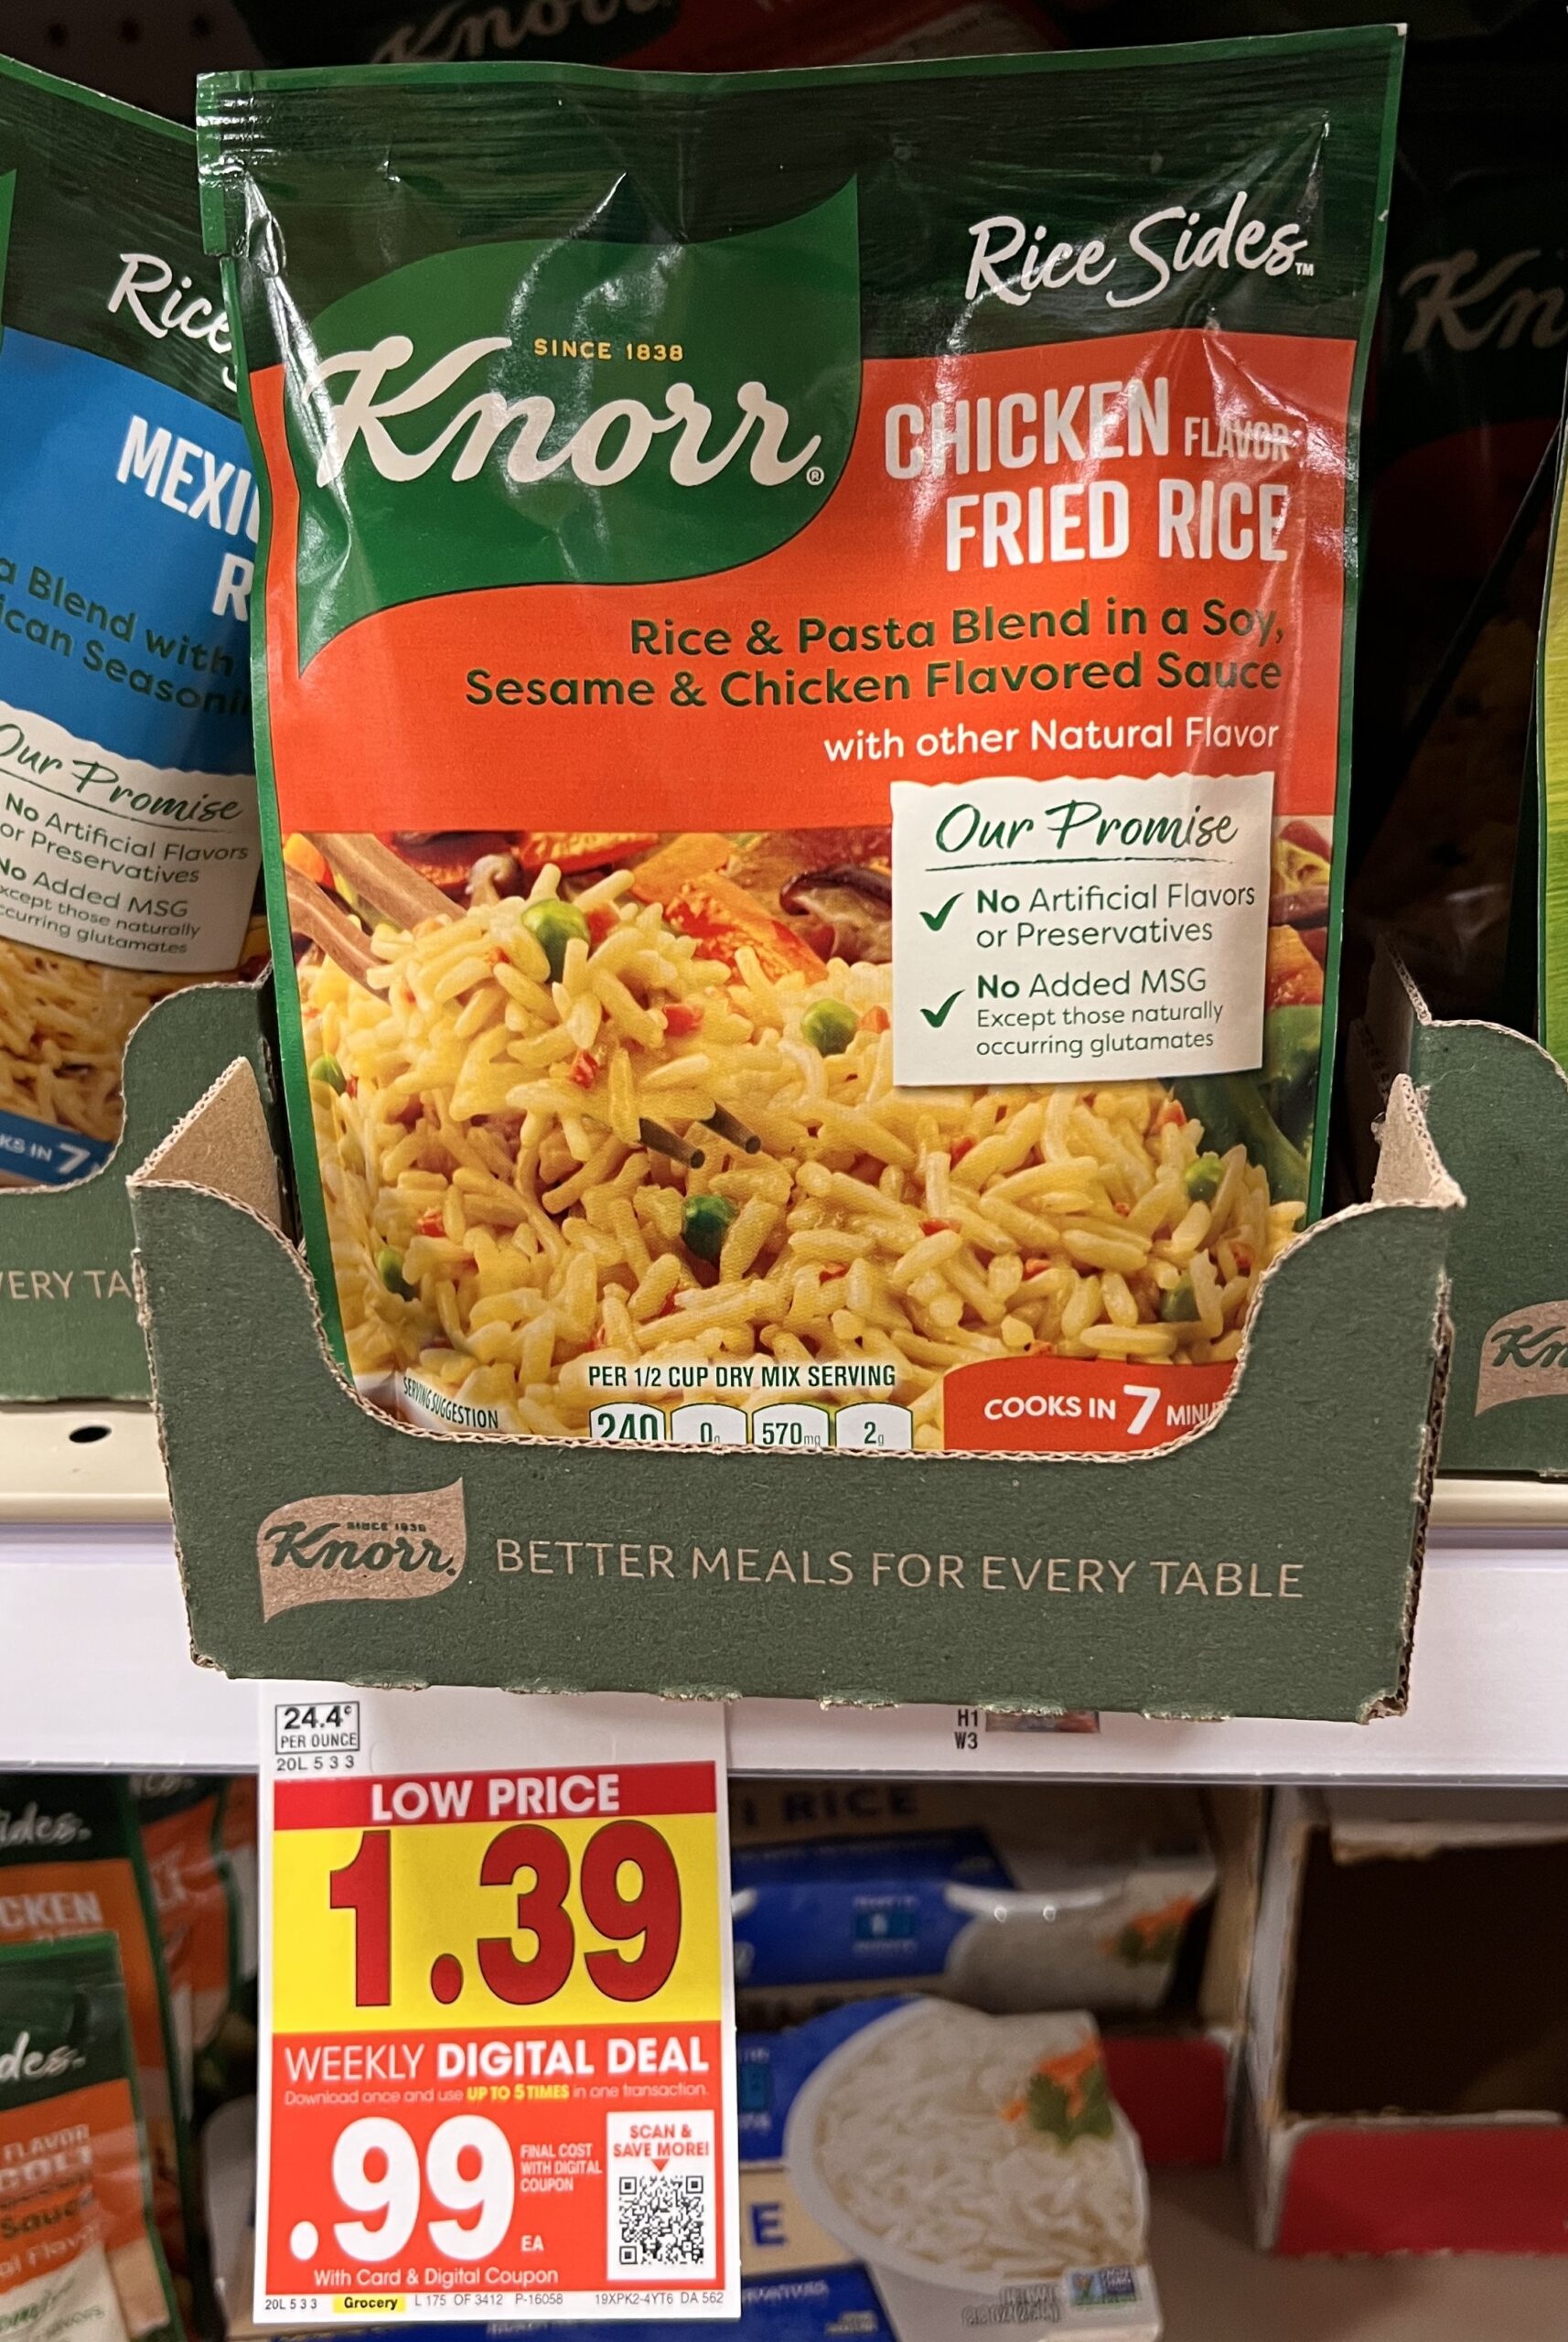 Knorr Rice Side Kroger Shelf Image_1